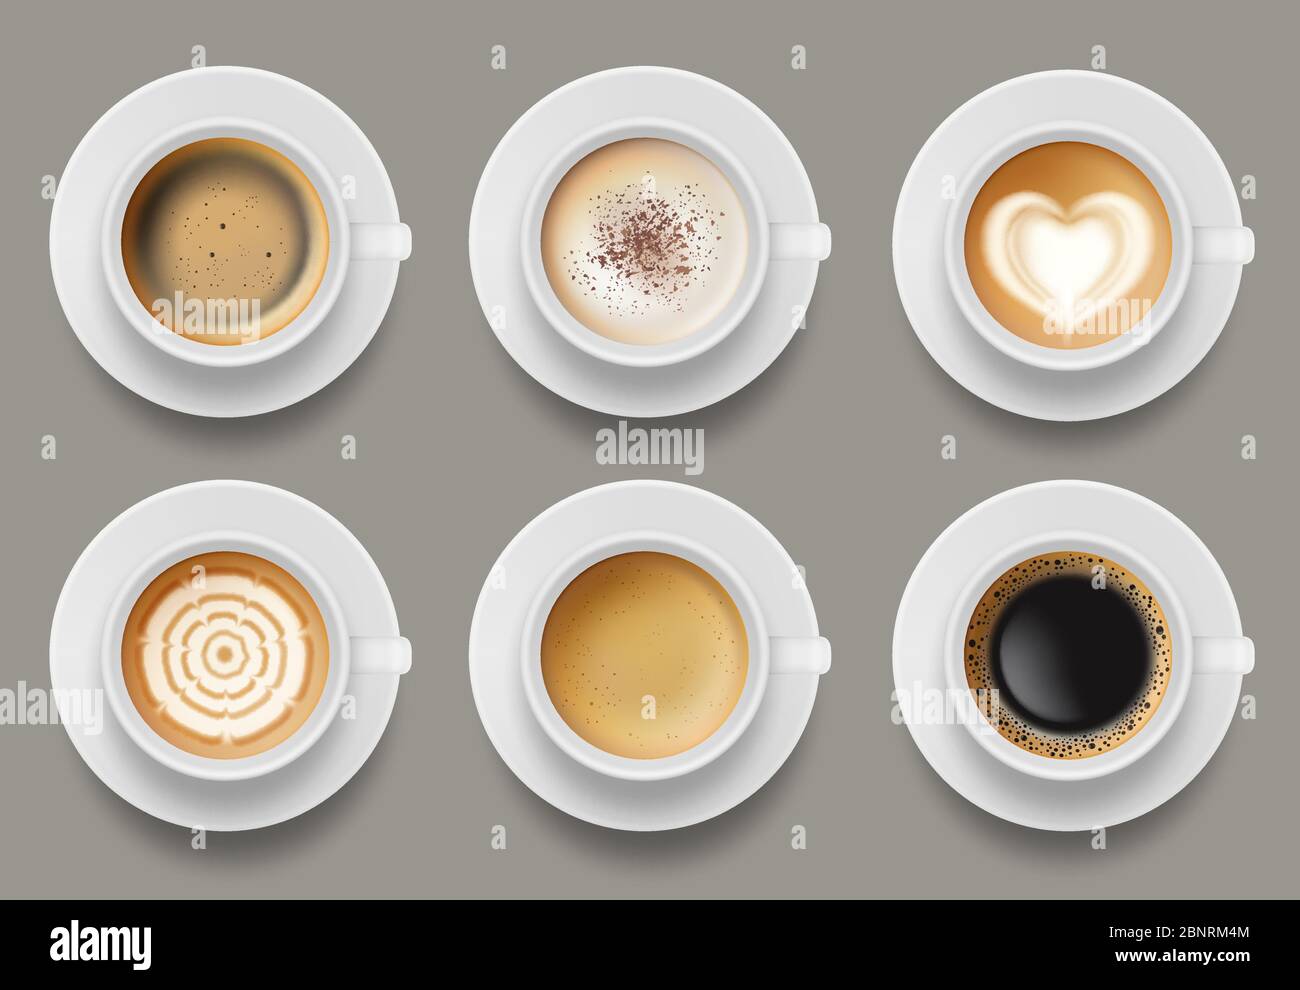 Kaffeebecher, Draufsicht. Cappuccino Espresso Latte Milch braun Kaffee Vektor realistische Vorlage Stock Vektor